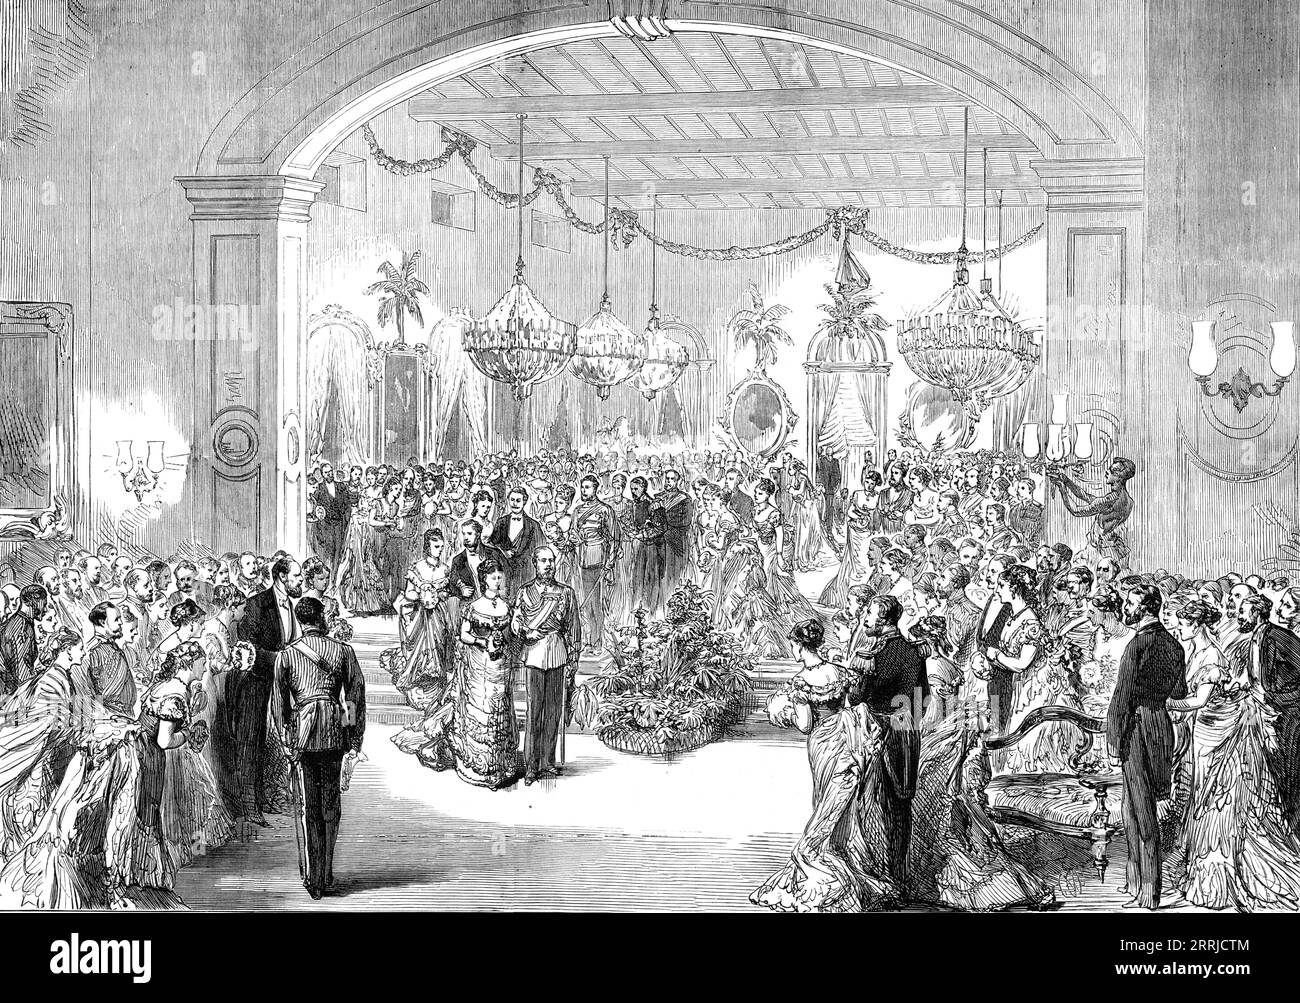 The Royal Visit to India: The Madras Club Ball, da uno schizzo di un ufficiale del Serapis, 1876. Il futuro re Edoardo VII '... ha partecipato a un ballo dato in suo onore... il principe [del Galles] indossava l'uniforme del feldmaresciallo in abiti completi... Non c'erano principi nativi... niente poteva eccedere il gusto o la brillantezza delle decorazioni, la sala da ballo era adornata da palme poste tra ciascuna delle arcate che si aprivano sul colonnato... erano presenti circa 600 ospiti... il Principe... ha aperto il ballo con la signora Shaw Steward, la moglie del colonnello Steward, il presidente del club... il suo Royal Hi Foto Stock